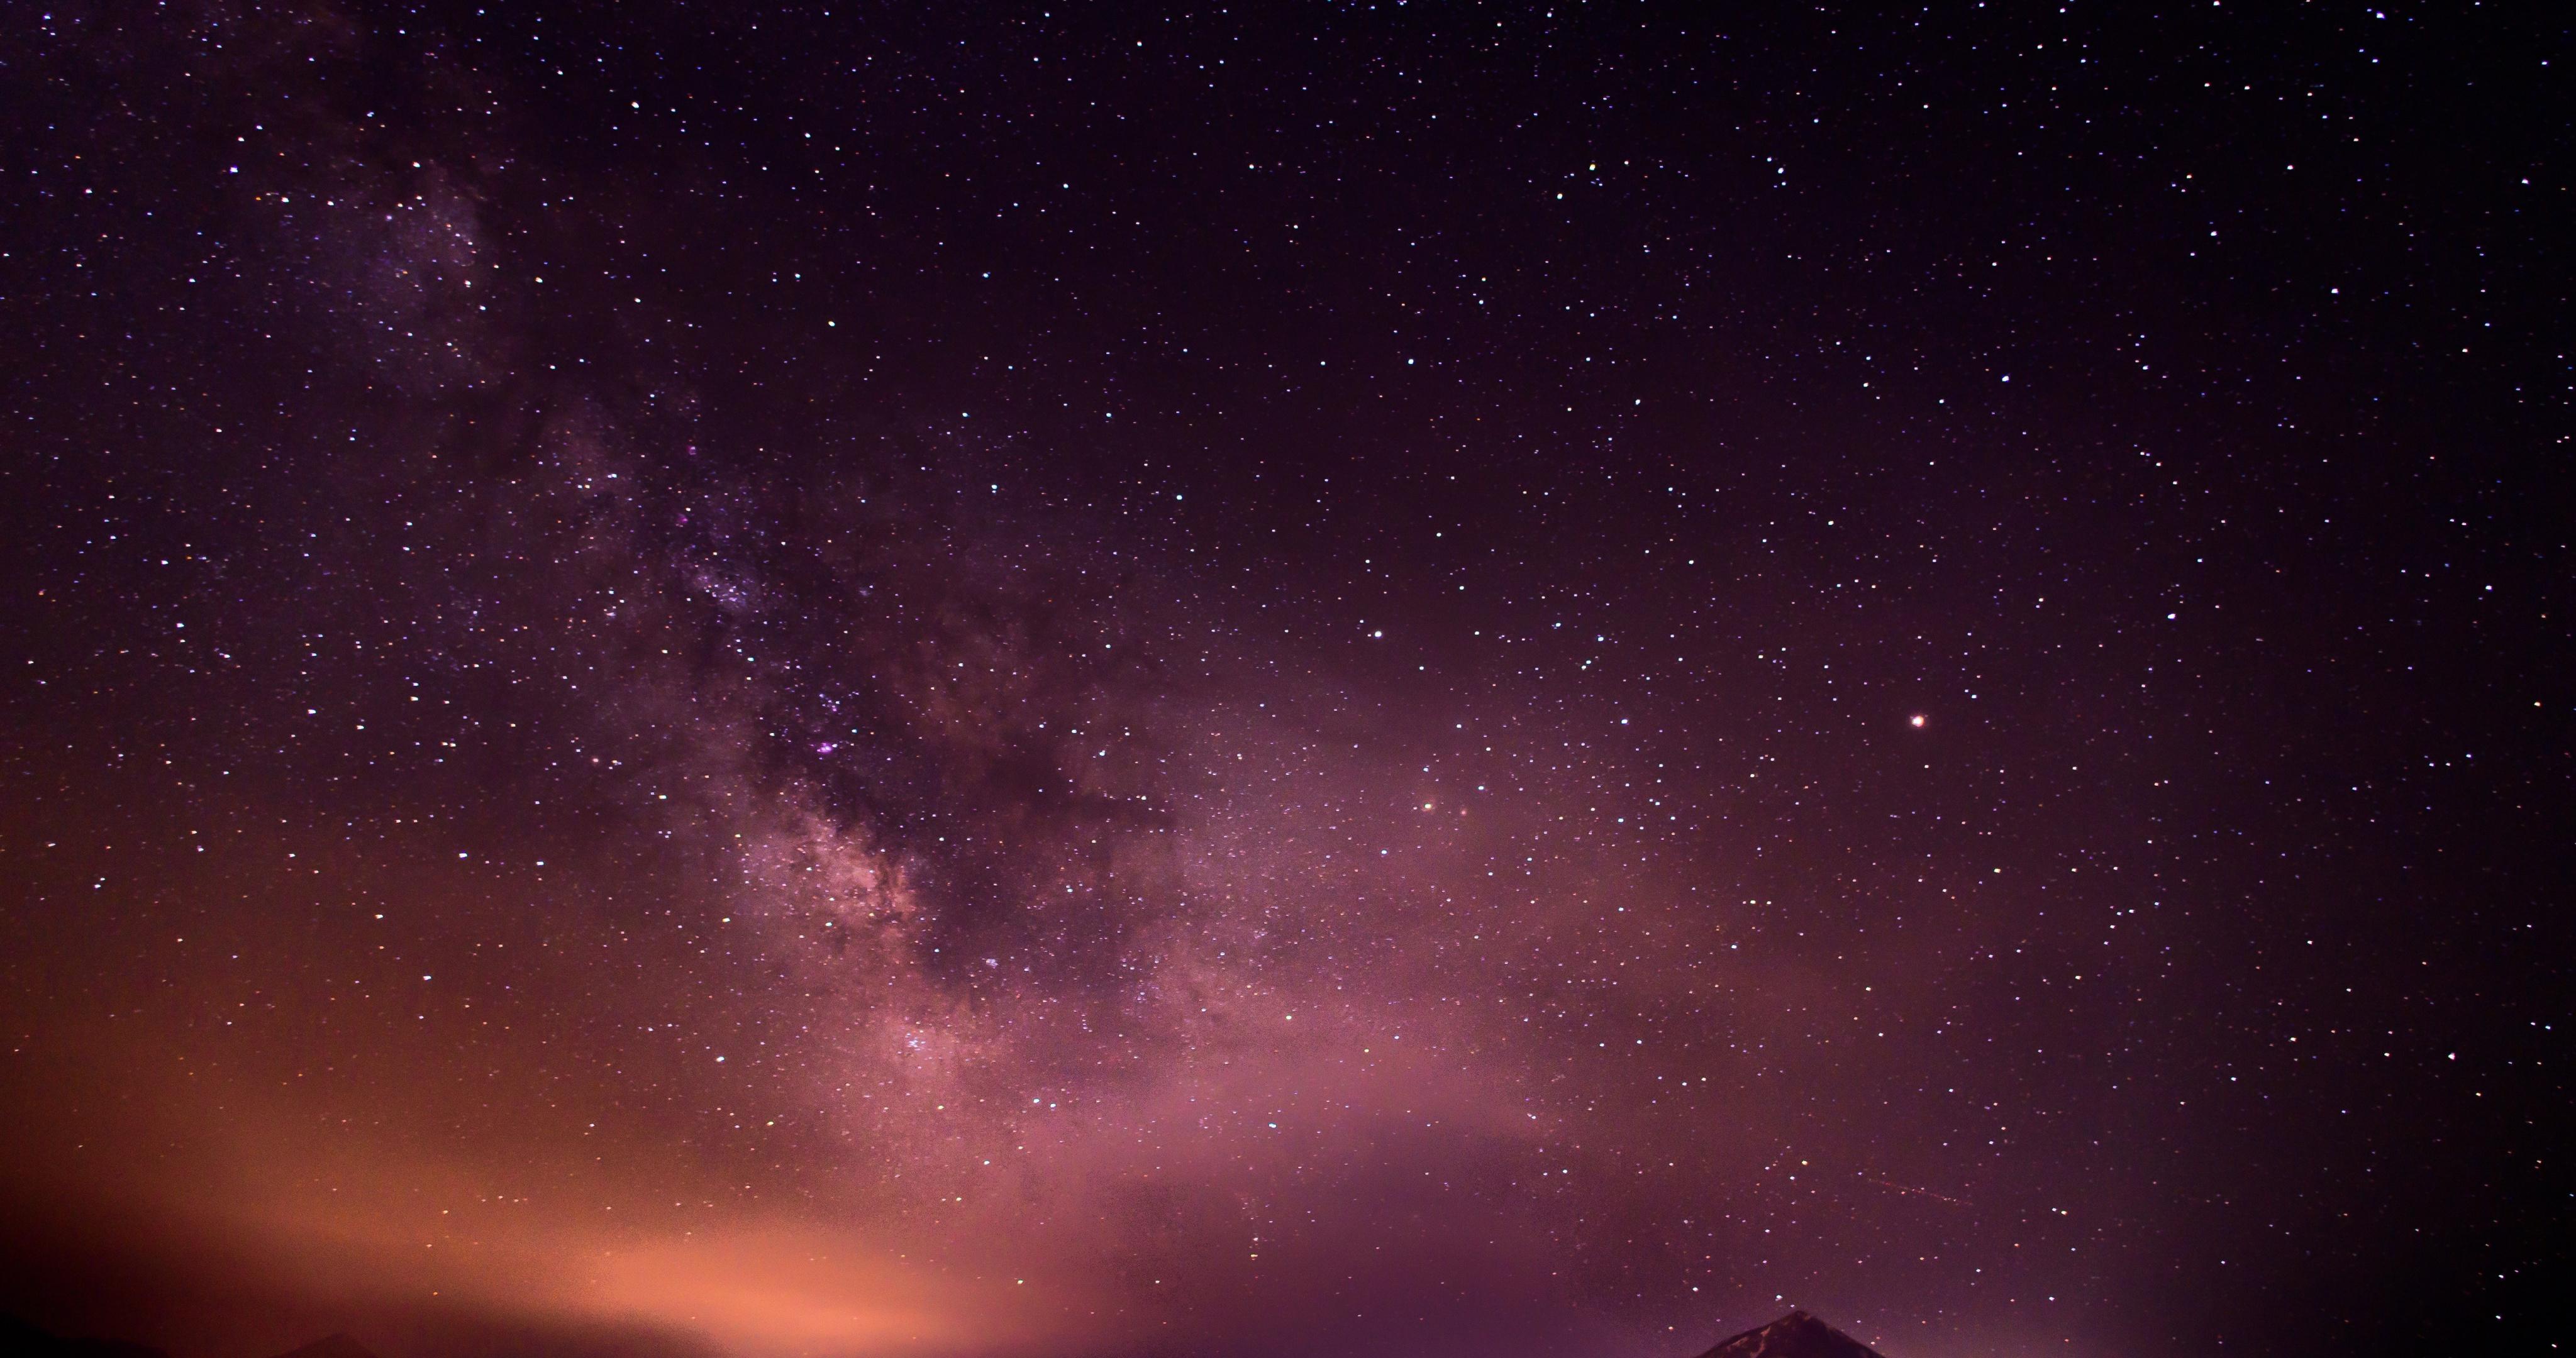 Обои Вид на ночное звездное небо 1920x1080 скачать бесплатно на рабочий стол